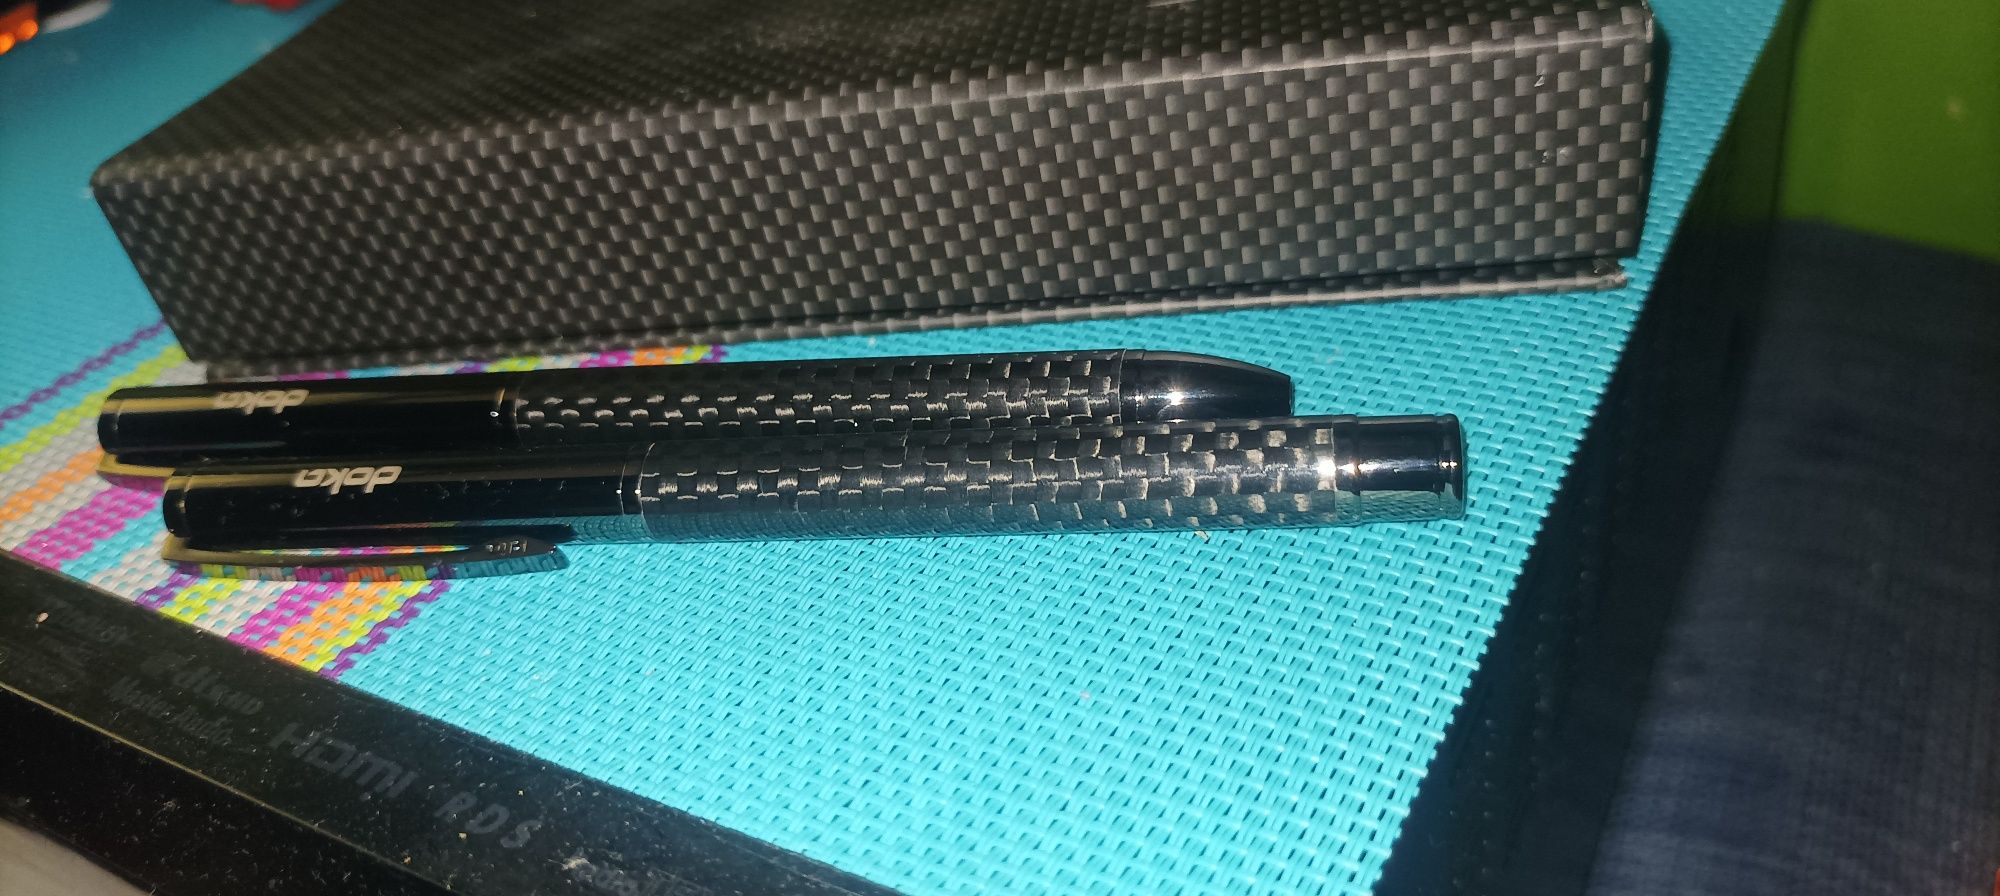 2 eleganckie długopisy carbon Doka